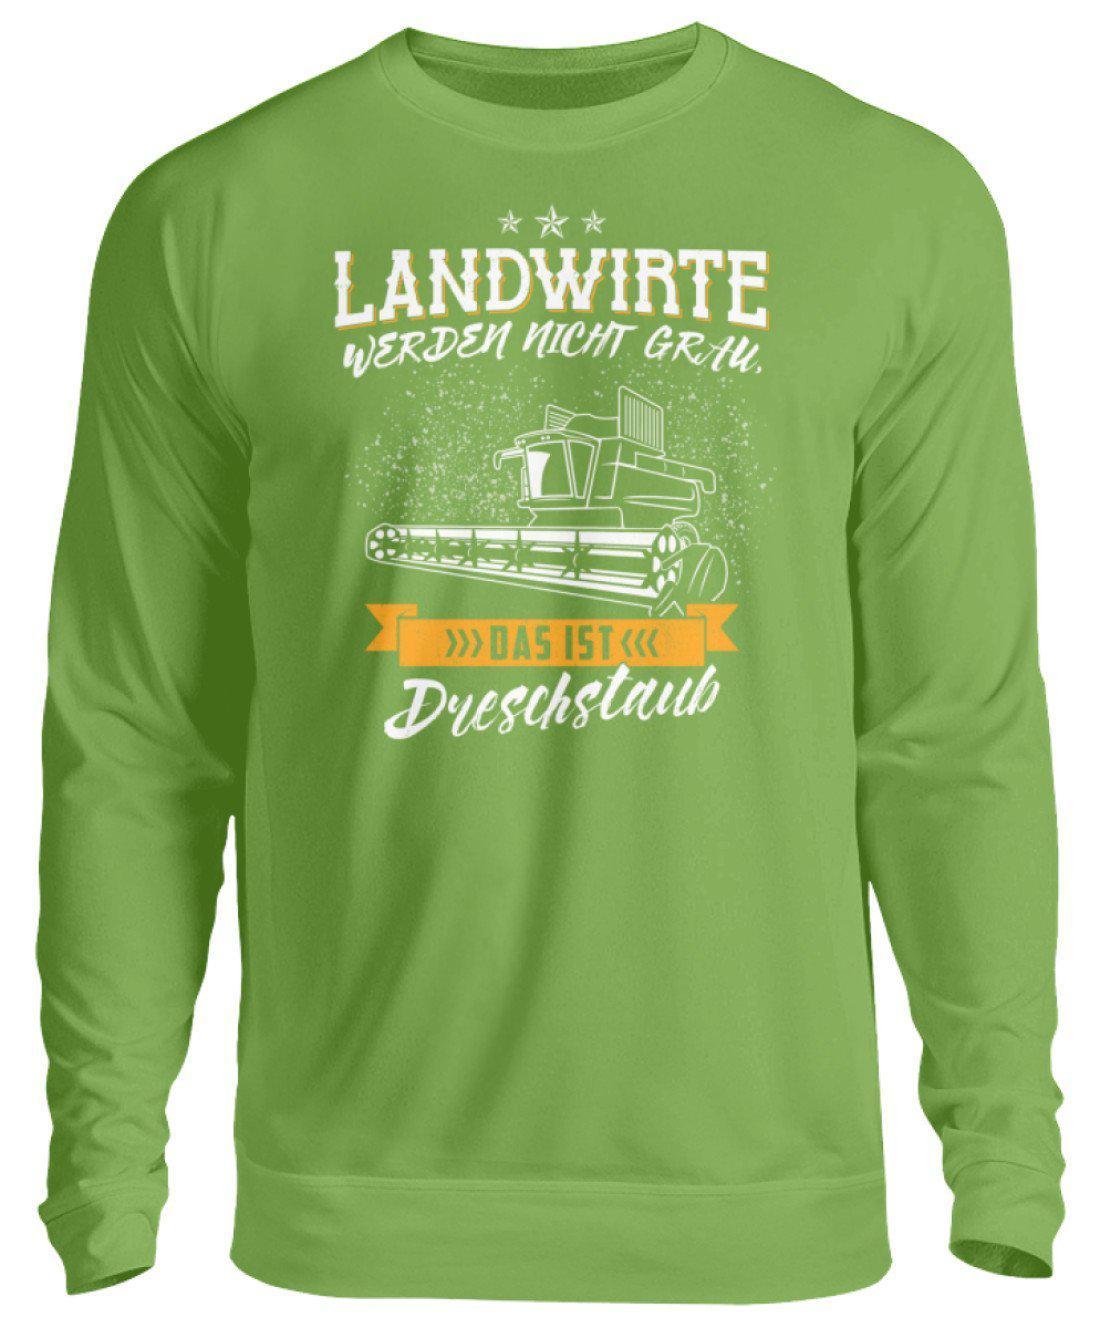 Landwirte grau Dreschstaub · Unisex Sweatshirt Pullover-Unisex Sweatshirt-LimeGreen-S-Agrarstarz